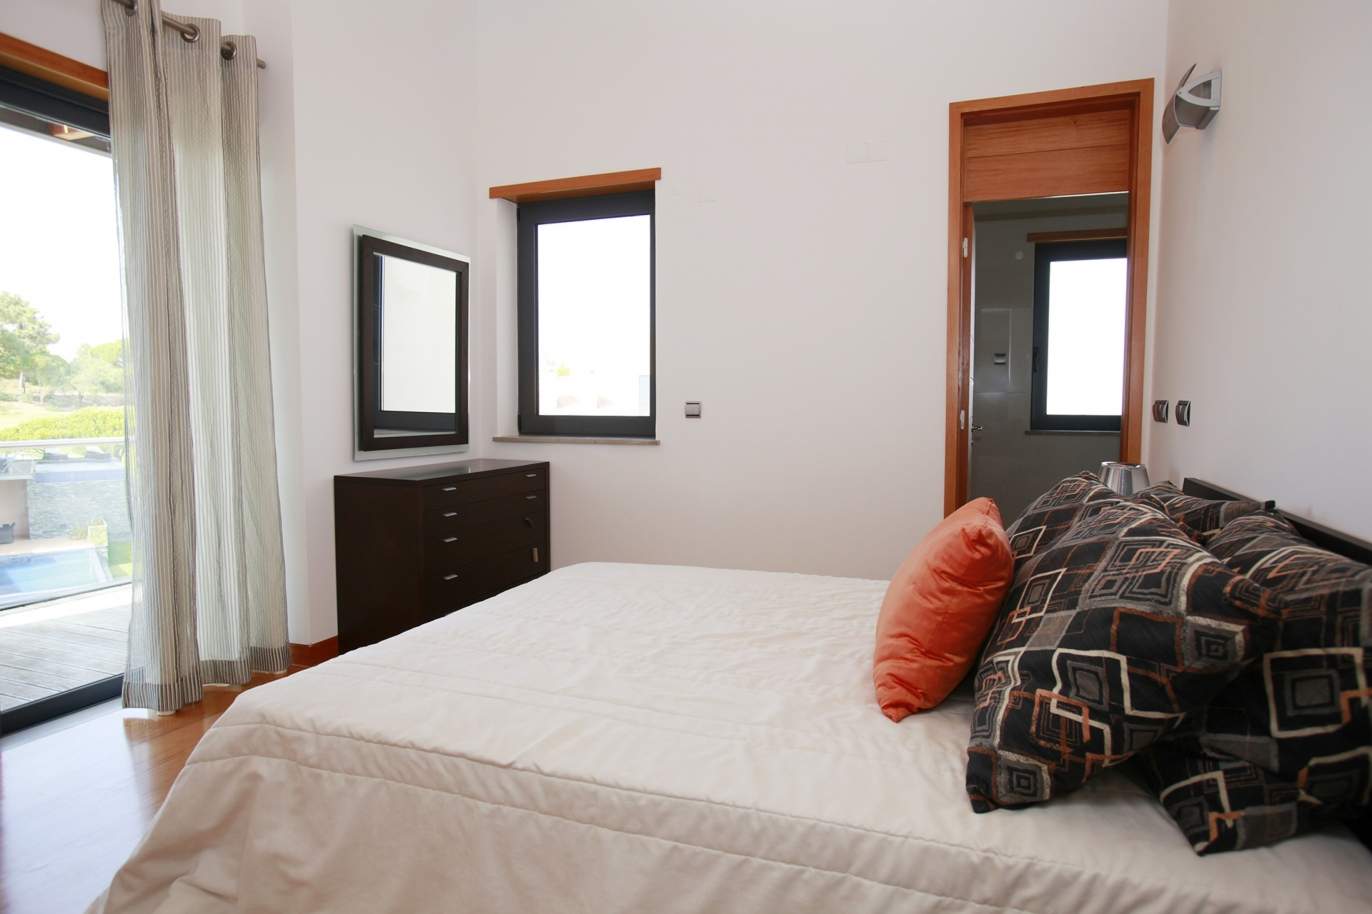 Apartamento para venda com vista golfe em Vale do Lobo, Algarve_120330